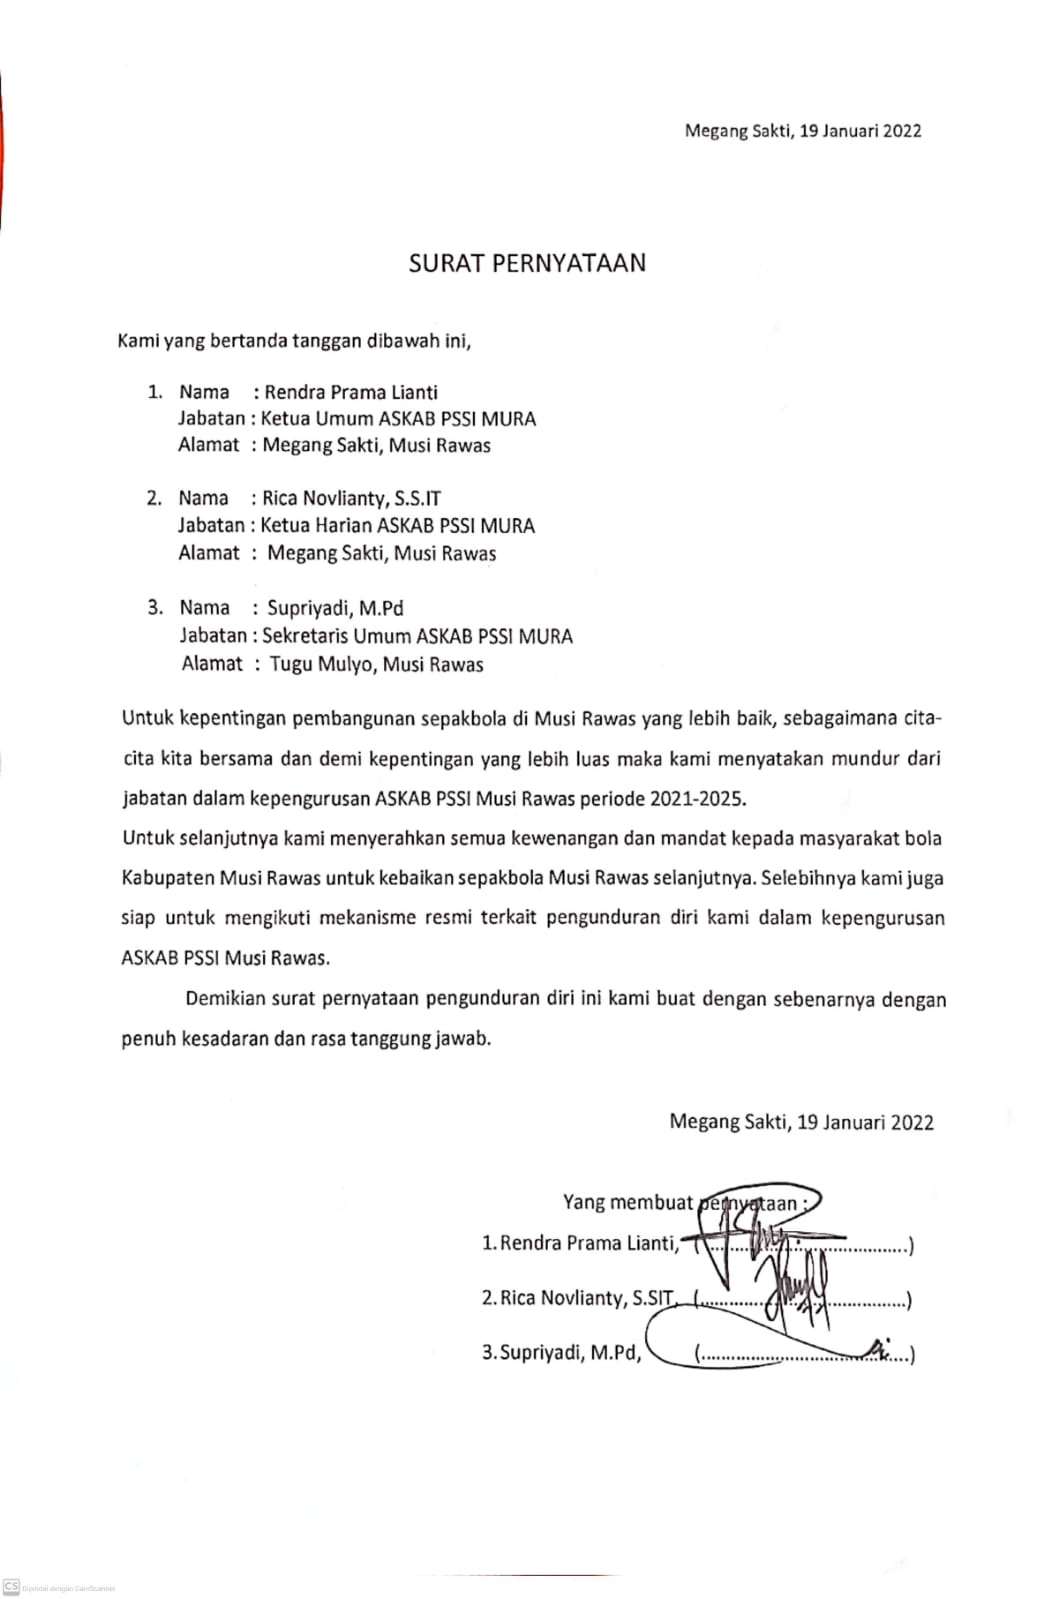 Mengejutkan, Ketua PSSI Mura, Ketua Harian dan Sekretaris Mengundurkan Diri